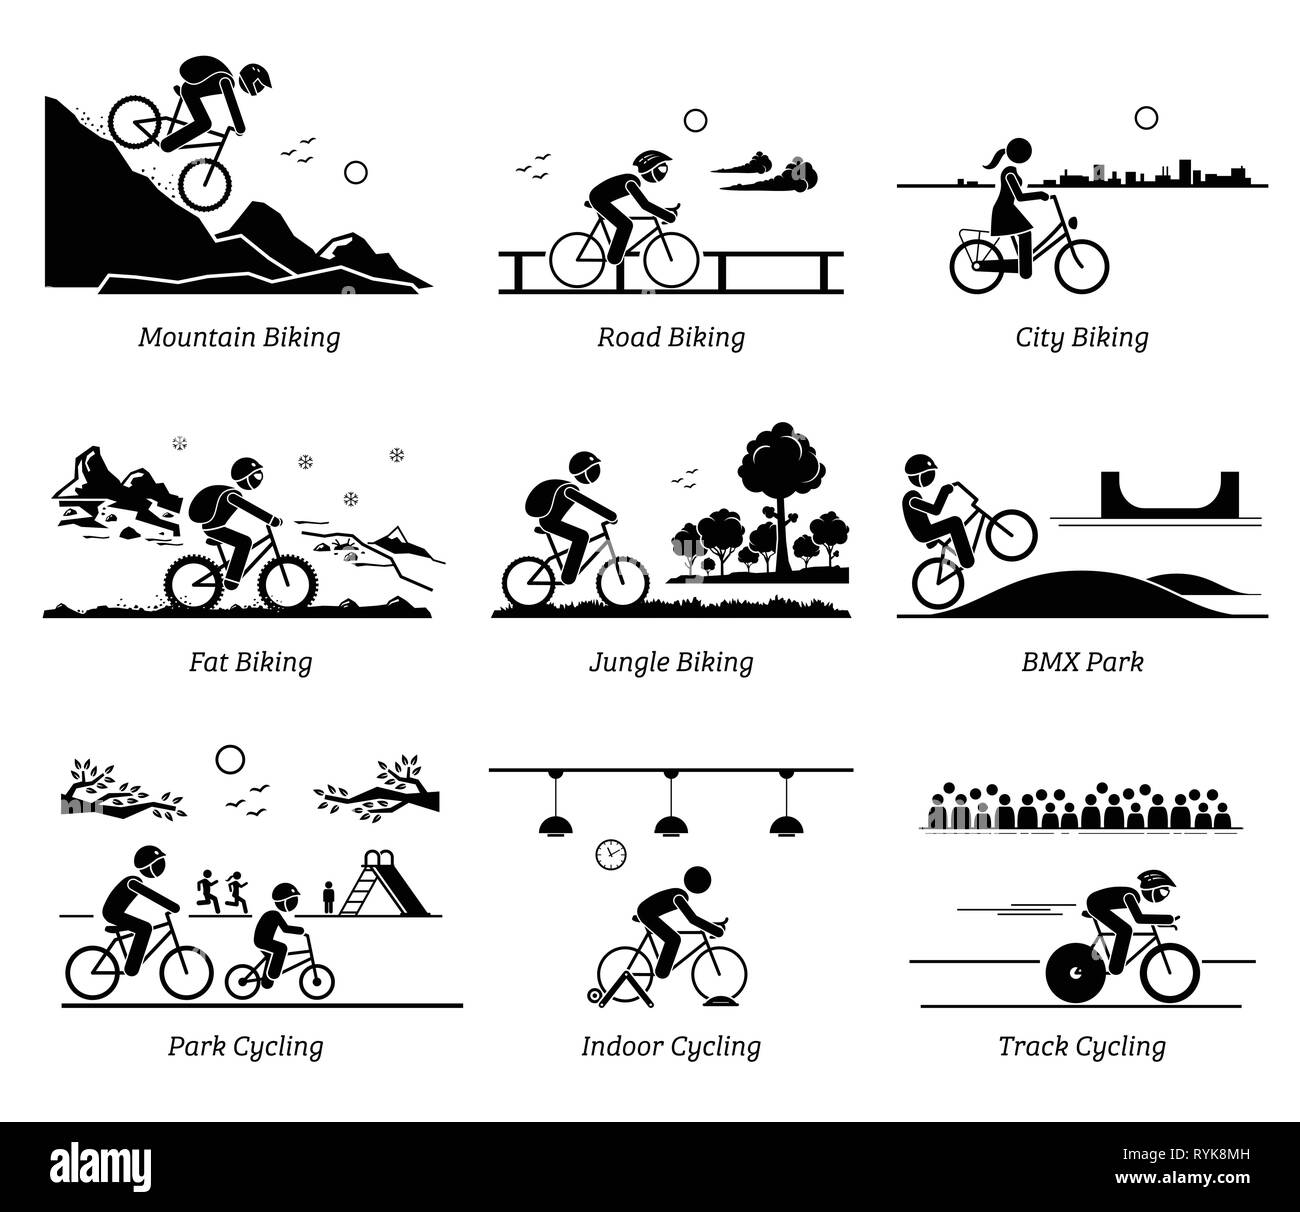 Ciclista ciclismo y paseos en bicicleta en diferentes lugares. Los pictogramas muestran en mountain bike, carretera, ciudad, hielo, selva, BMX, parque, piscina y pista. Ilustración del Vector